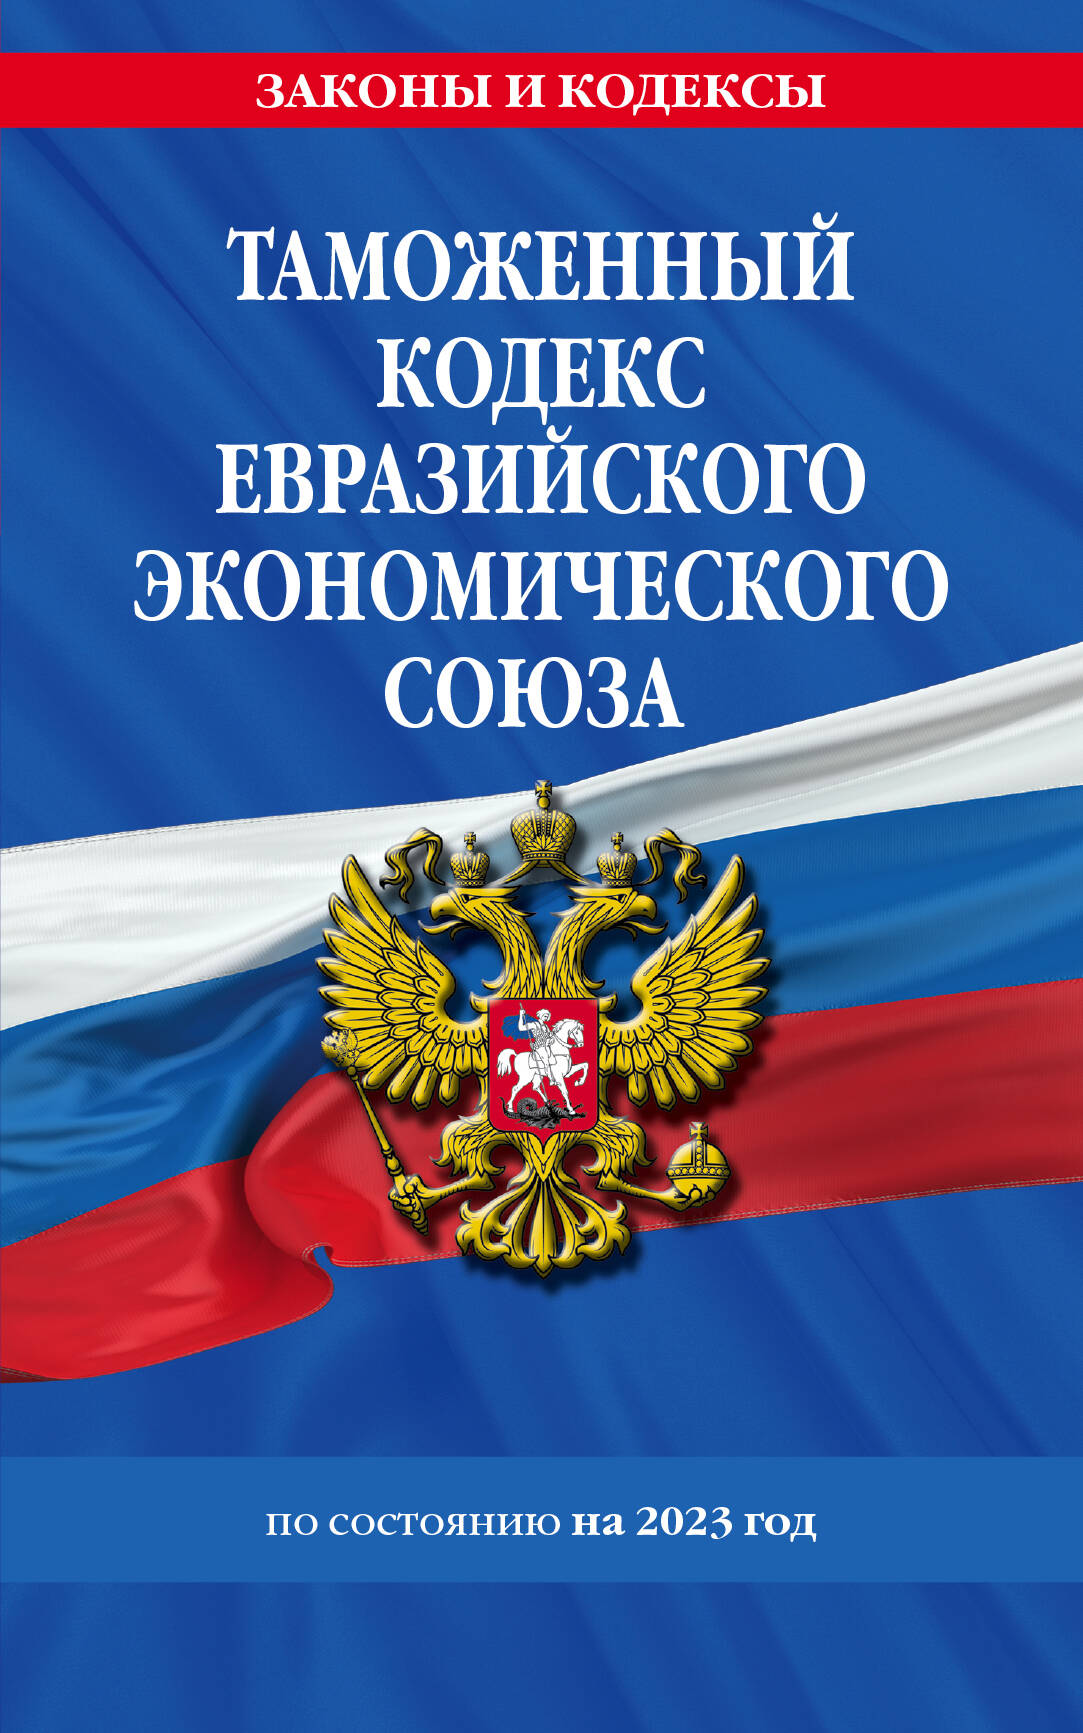 таможенный кодекс евразийского экономического союза Таможенный кодекс Евразийского экономического союза по состоянию на 2023 год